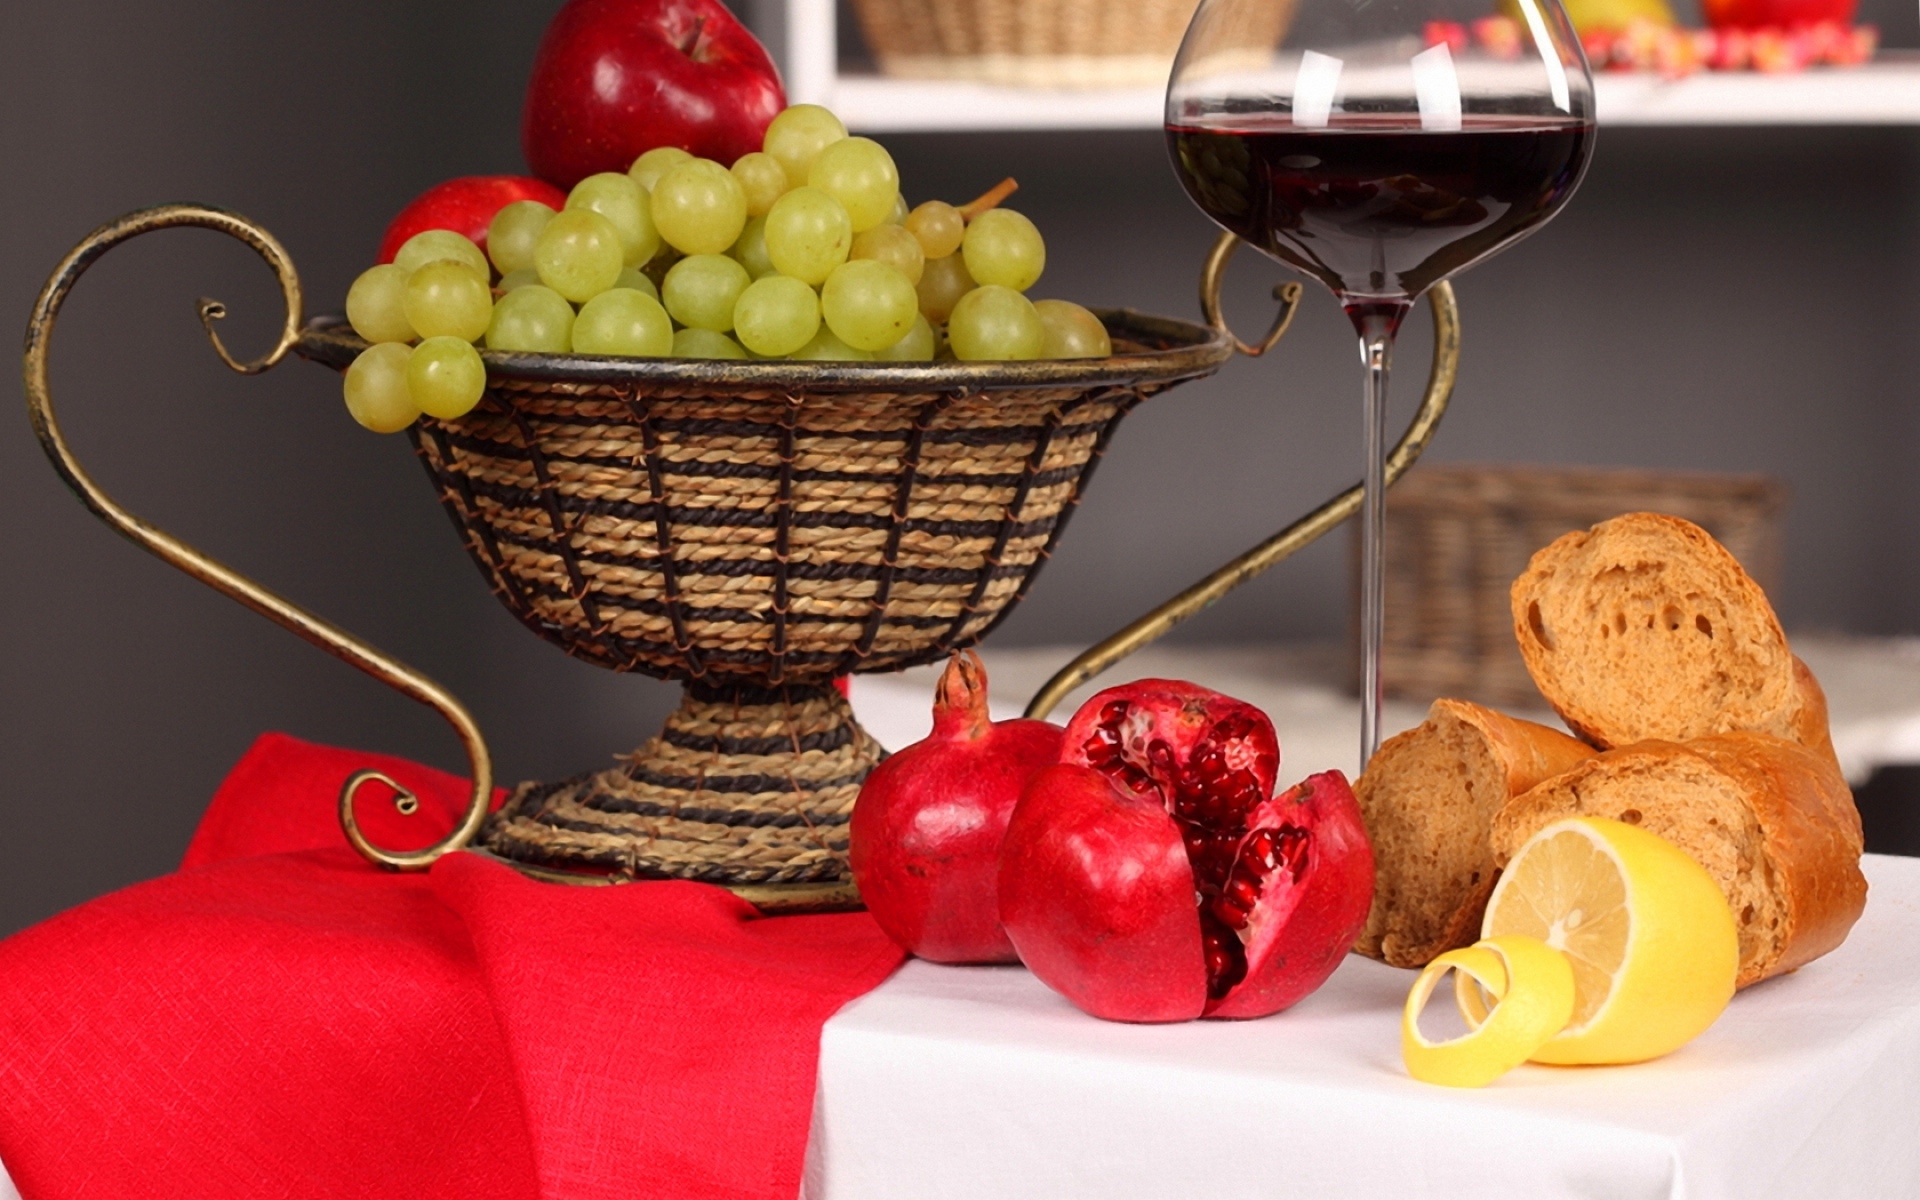 Картинки Стол, скатерть, салфетка, ваза, фрукты, виноград, лимоны, гранаты, хлеб, вино, стекло, красный, отражение фото и обои на рабочий стол